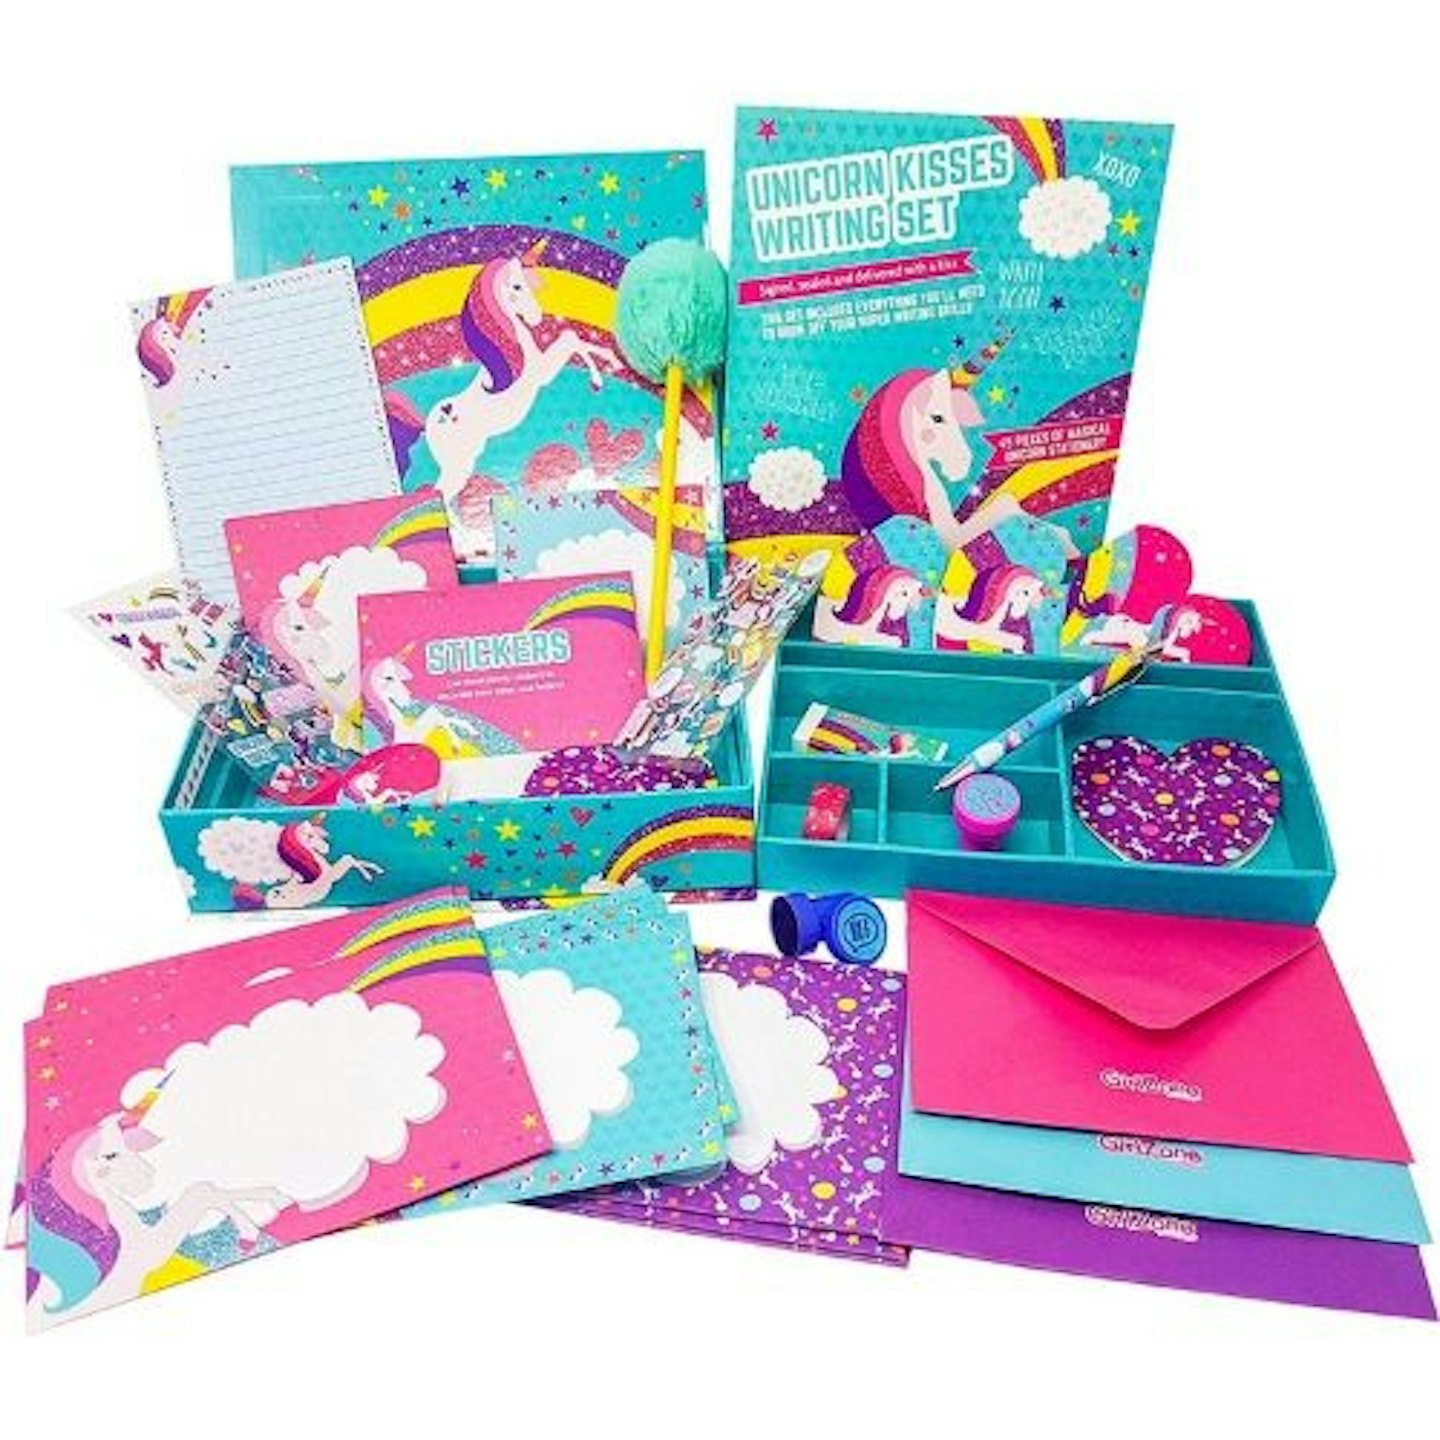 GirlZone: Unicorn Letter Writing Set for Girls, 45 Piece Stationery Set